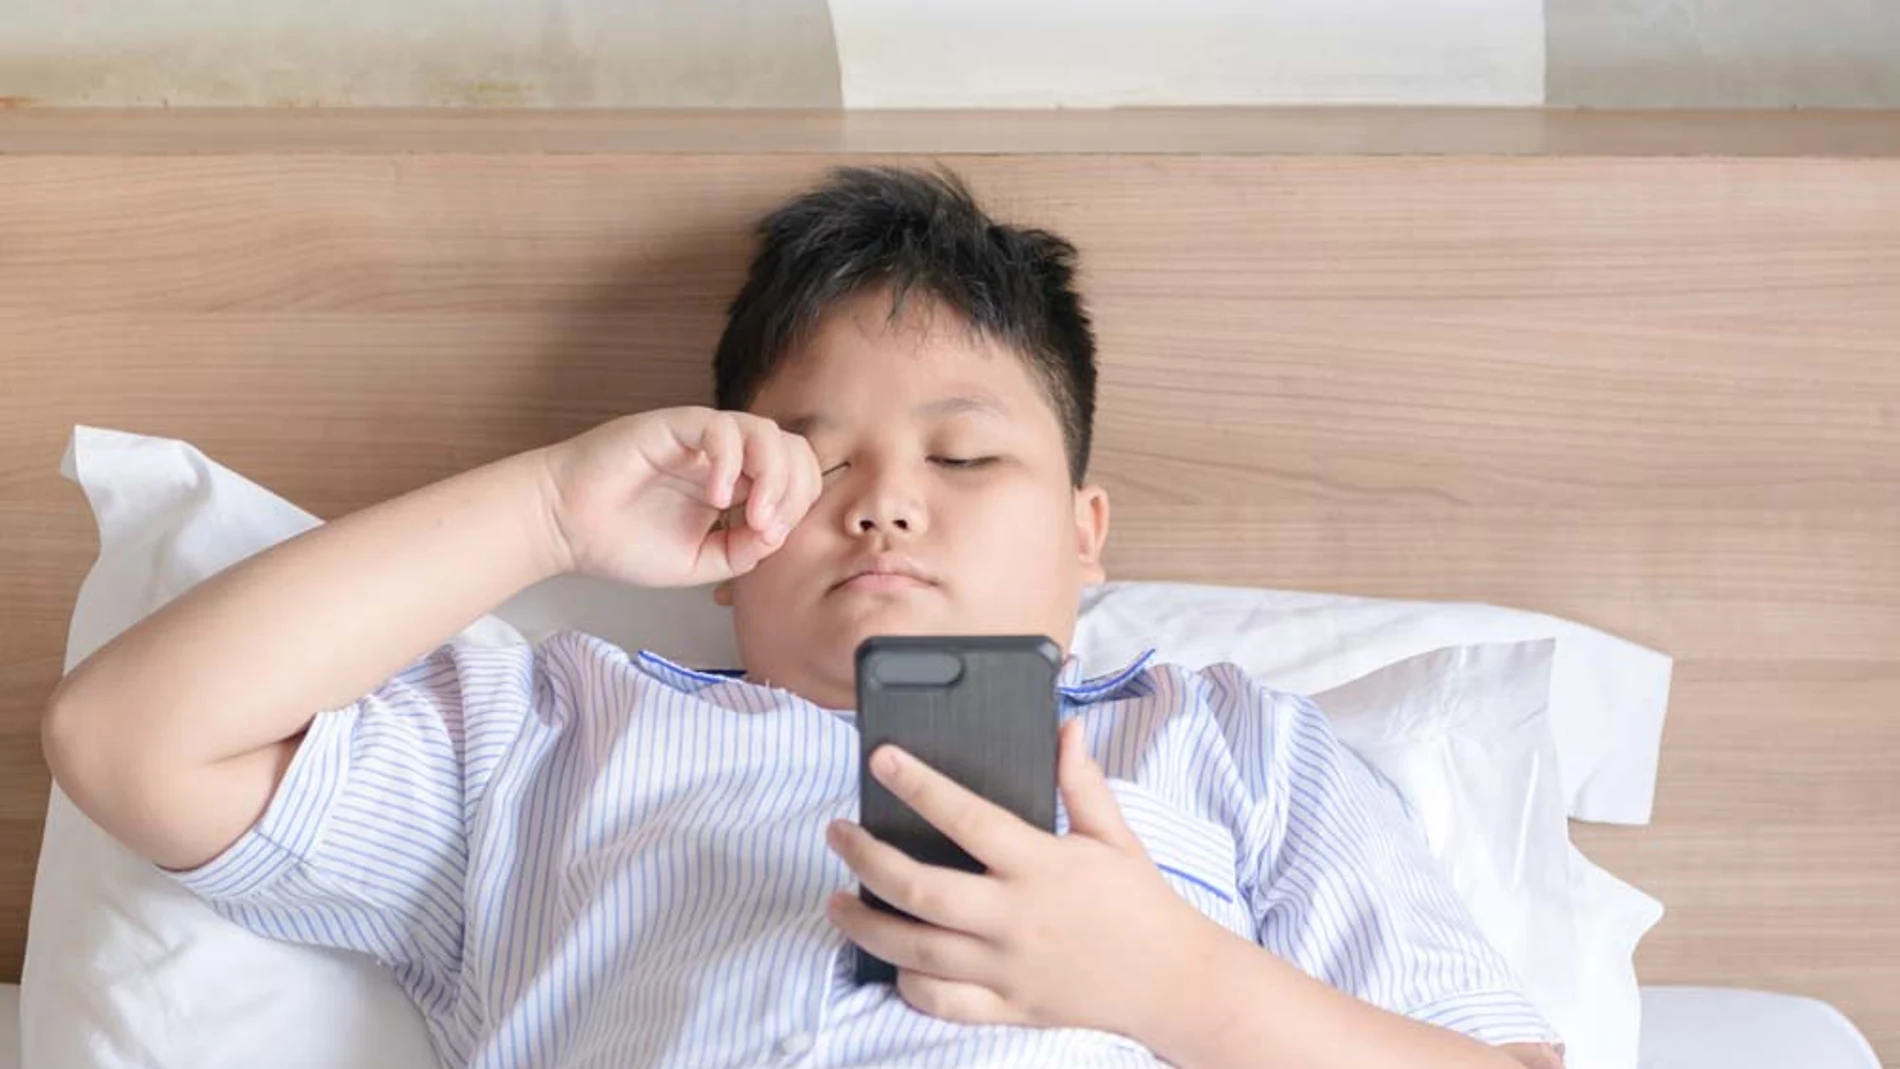 Los expertos recomiendan no utilizar el móvil antes de ir a dormir, porque la luz que emite la pantalla puede alterar el sueño